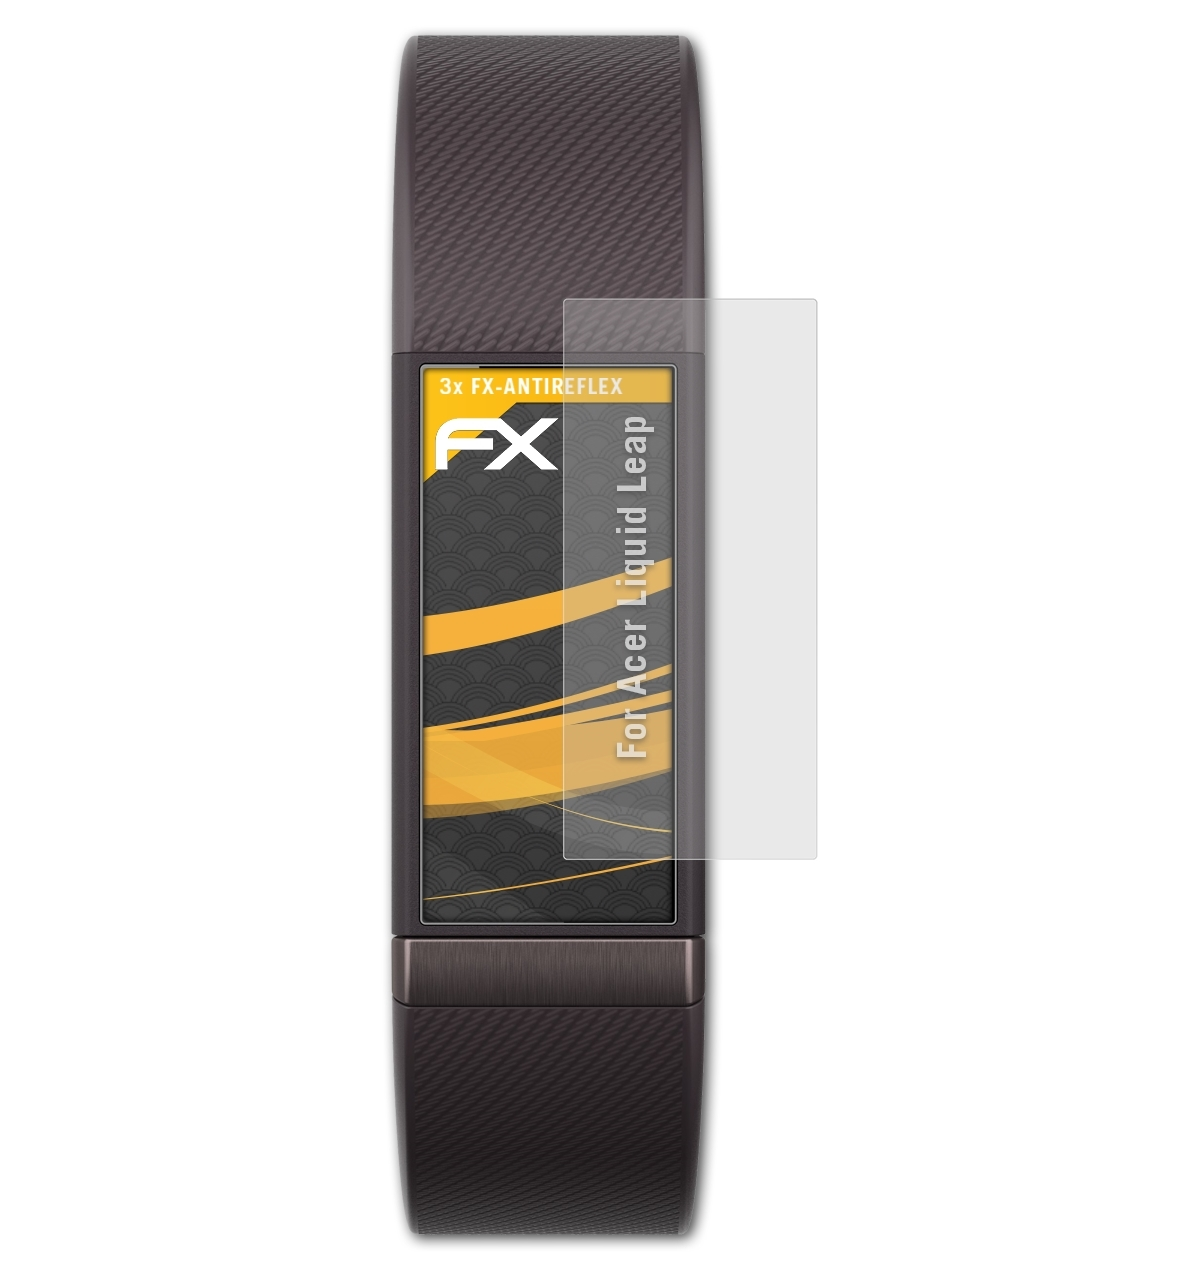 ATFOLIX 3x Liquid Leap) Displayschutz(für FX-Antireflex Acer